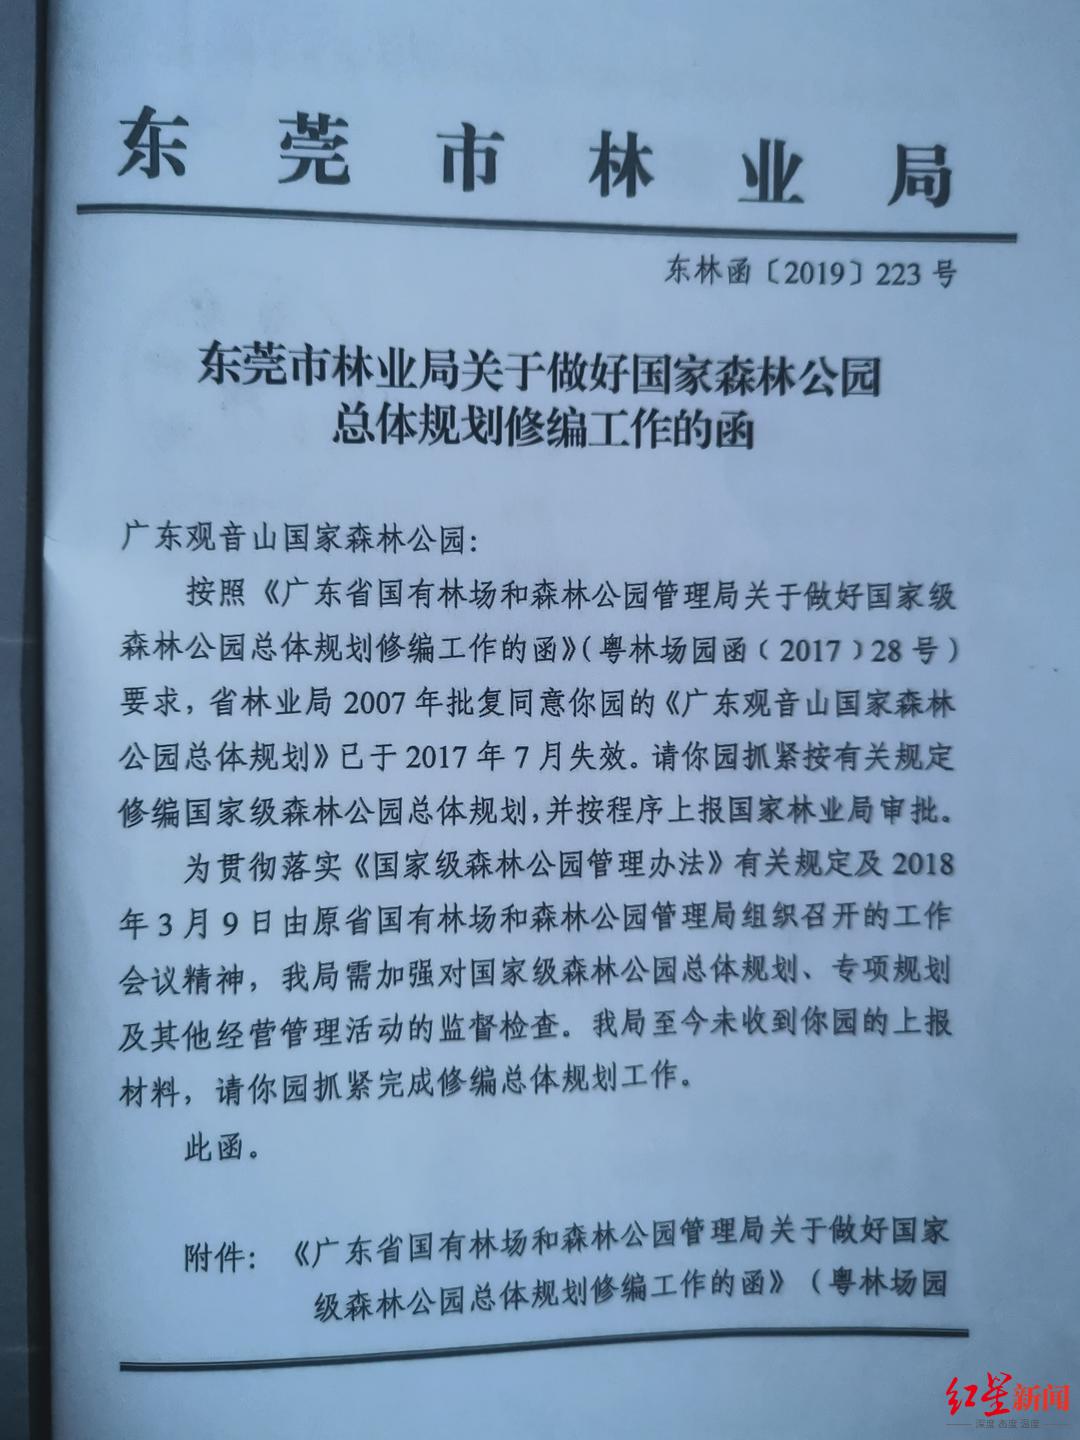 ▲2019年4月，东莞市林业局相关发函（首页）。 红星新闻记者 刘木木 摄